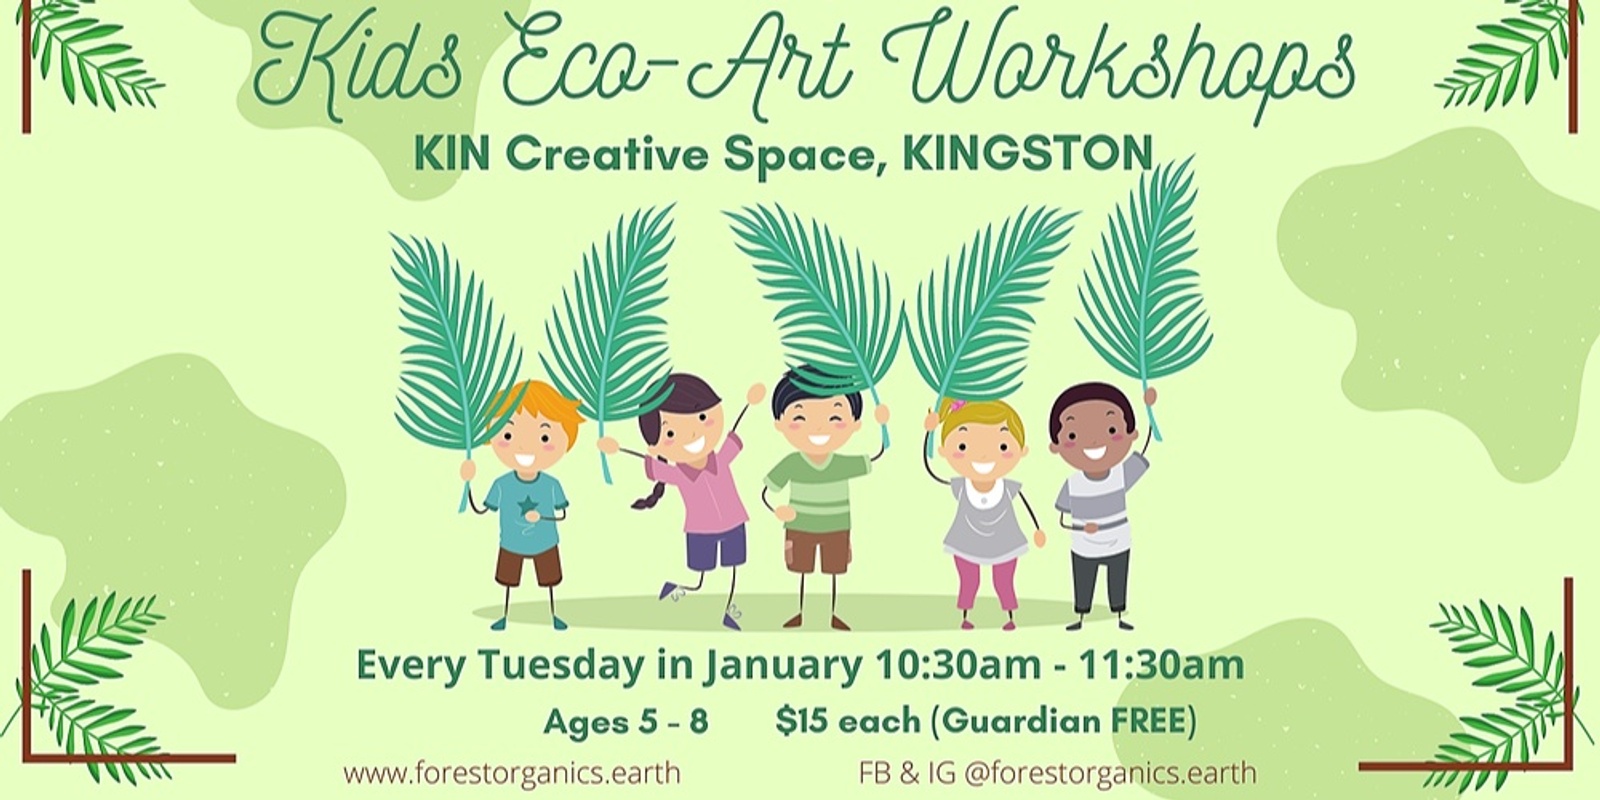 Banner image for Kids Eco-Art Workshops - Bug Hotel Kingston